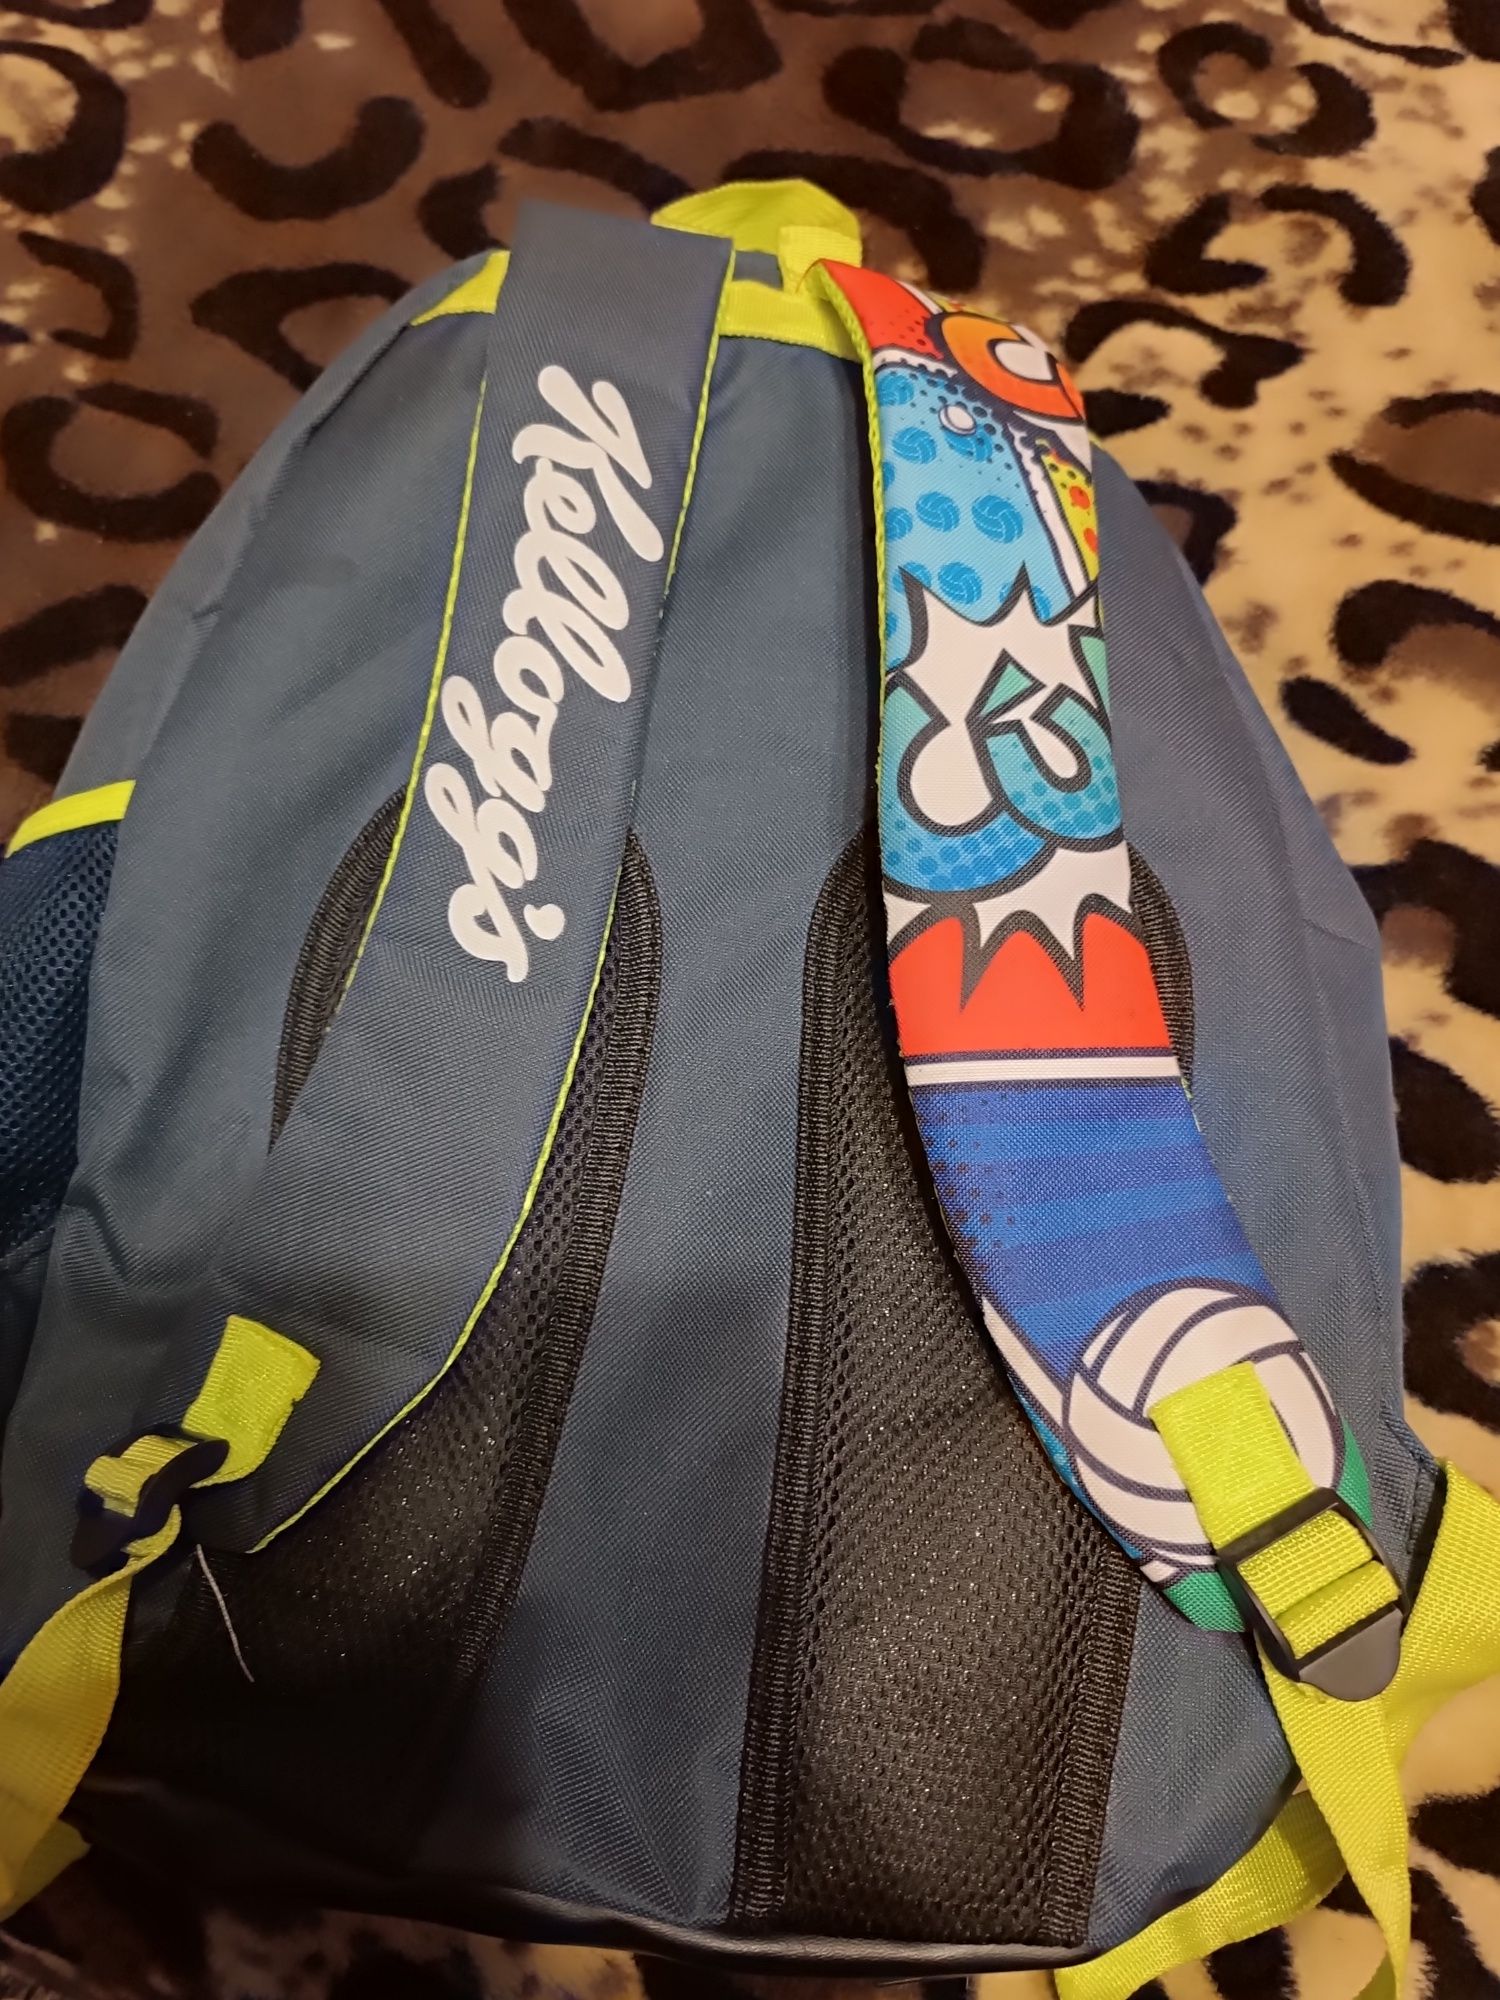 Школьный рюкзак для мальчика